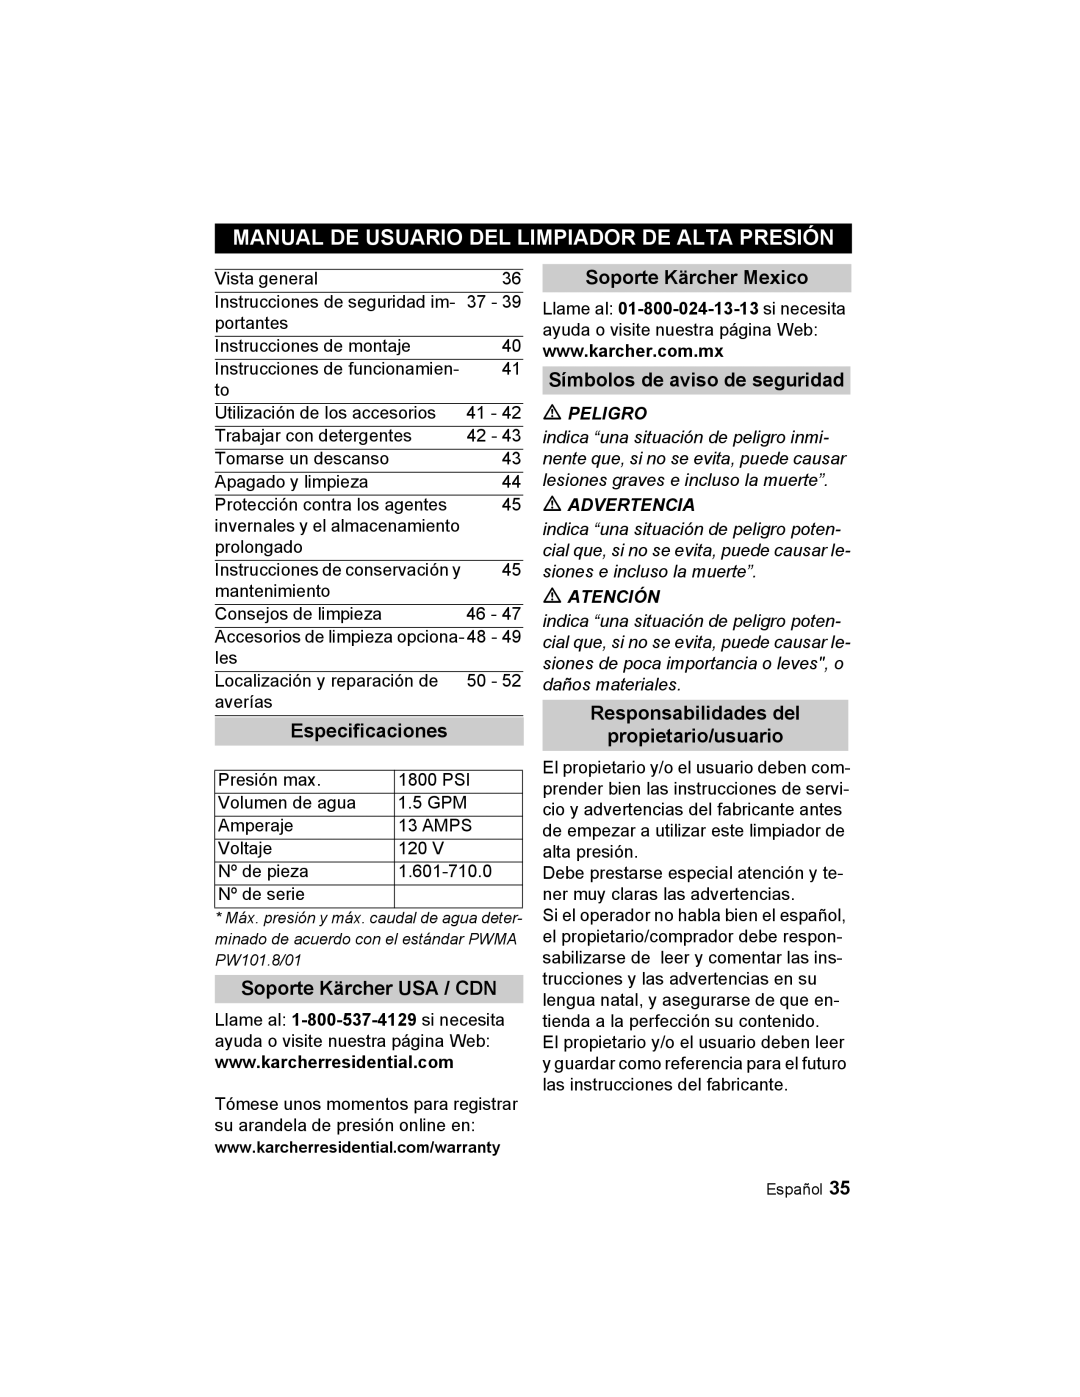 Karcher K 3.48 M Manual De Usuario Del Limpiador De Alta Presión, Especificaciones, Soporte Kärcher USA / CDN, Peligro 